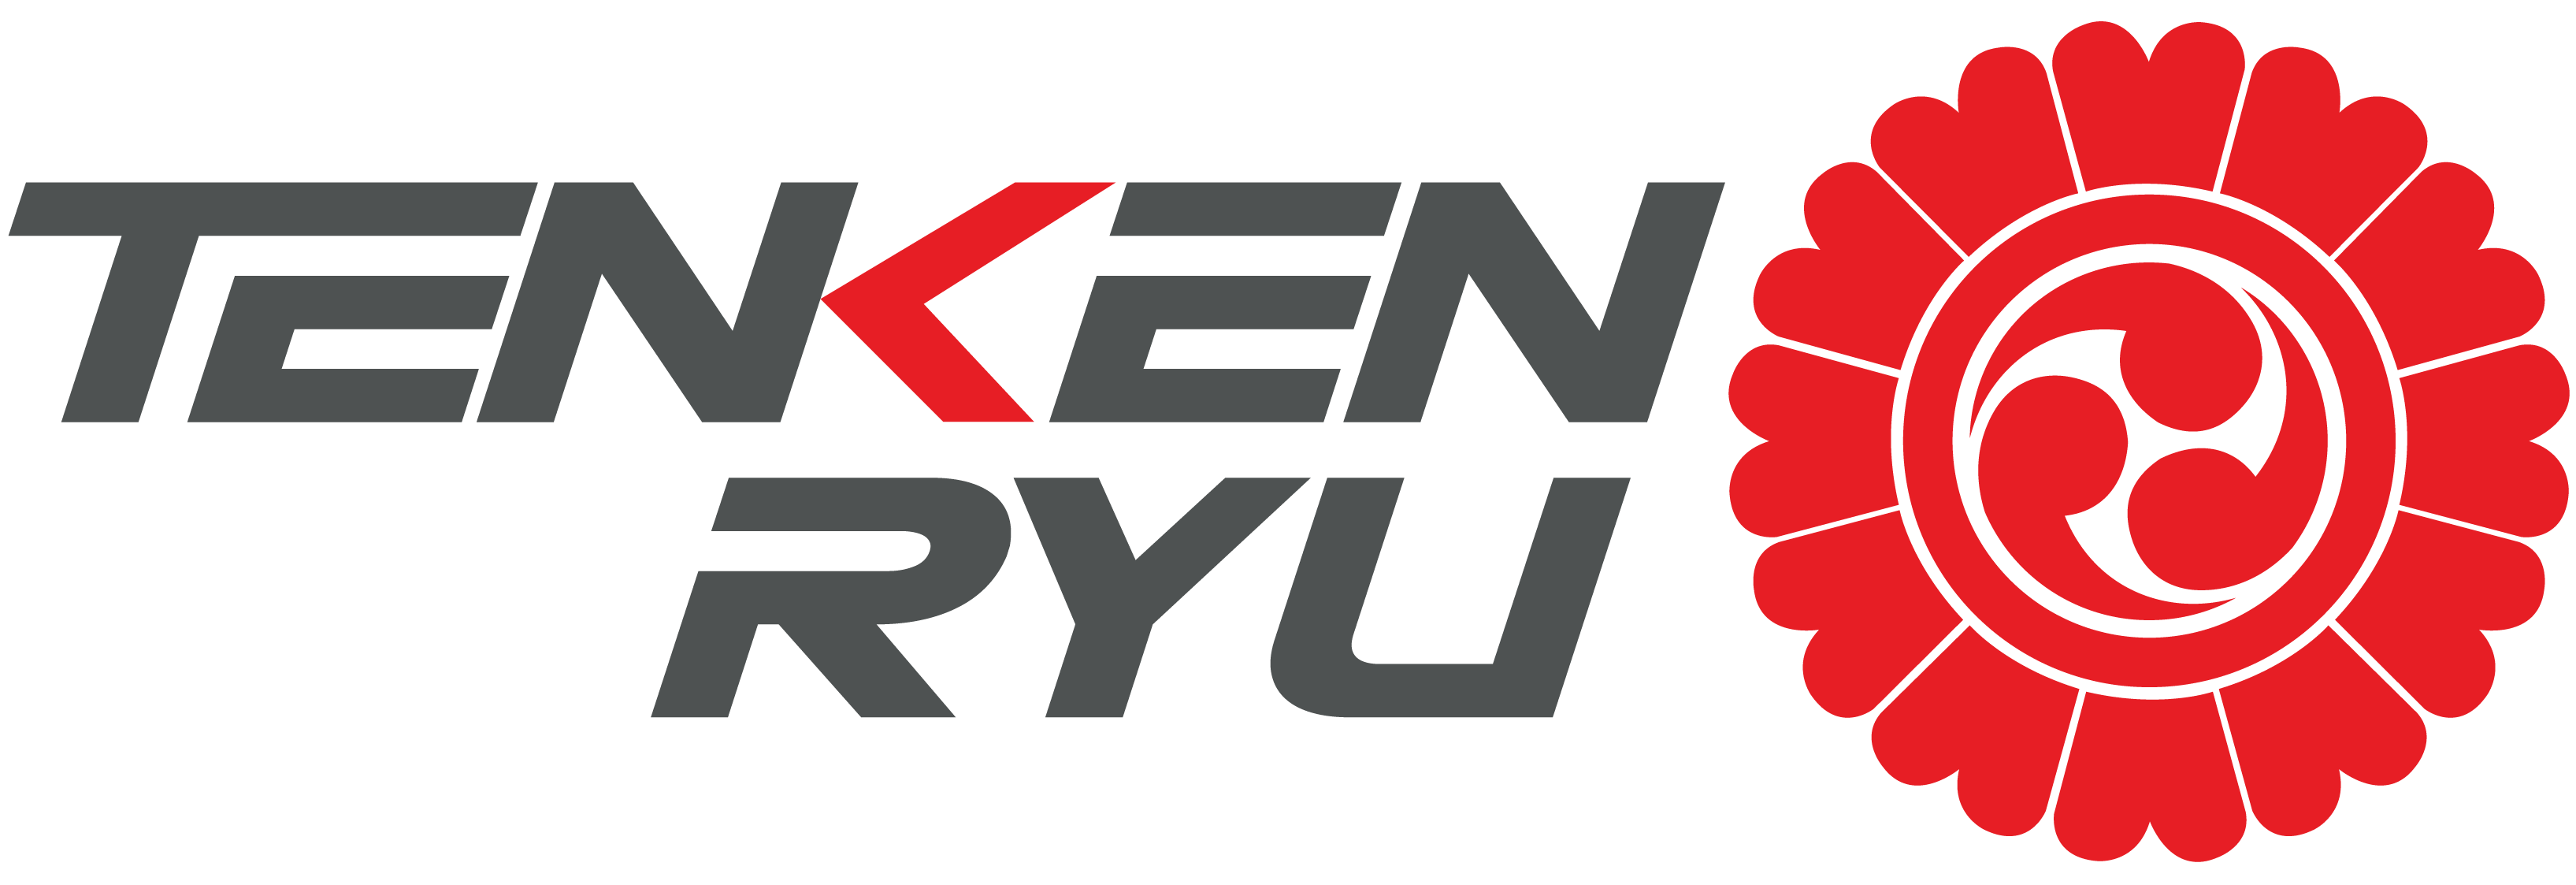 Tenken Ryuu A.C. donde nace el Kendo, Iaido y Jodo en Jalisco.